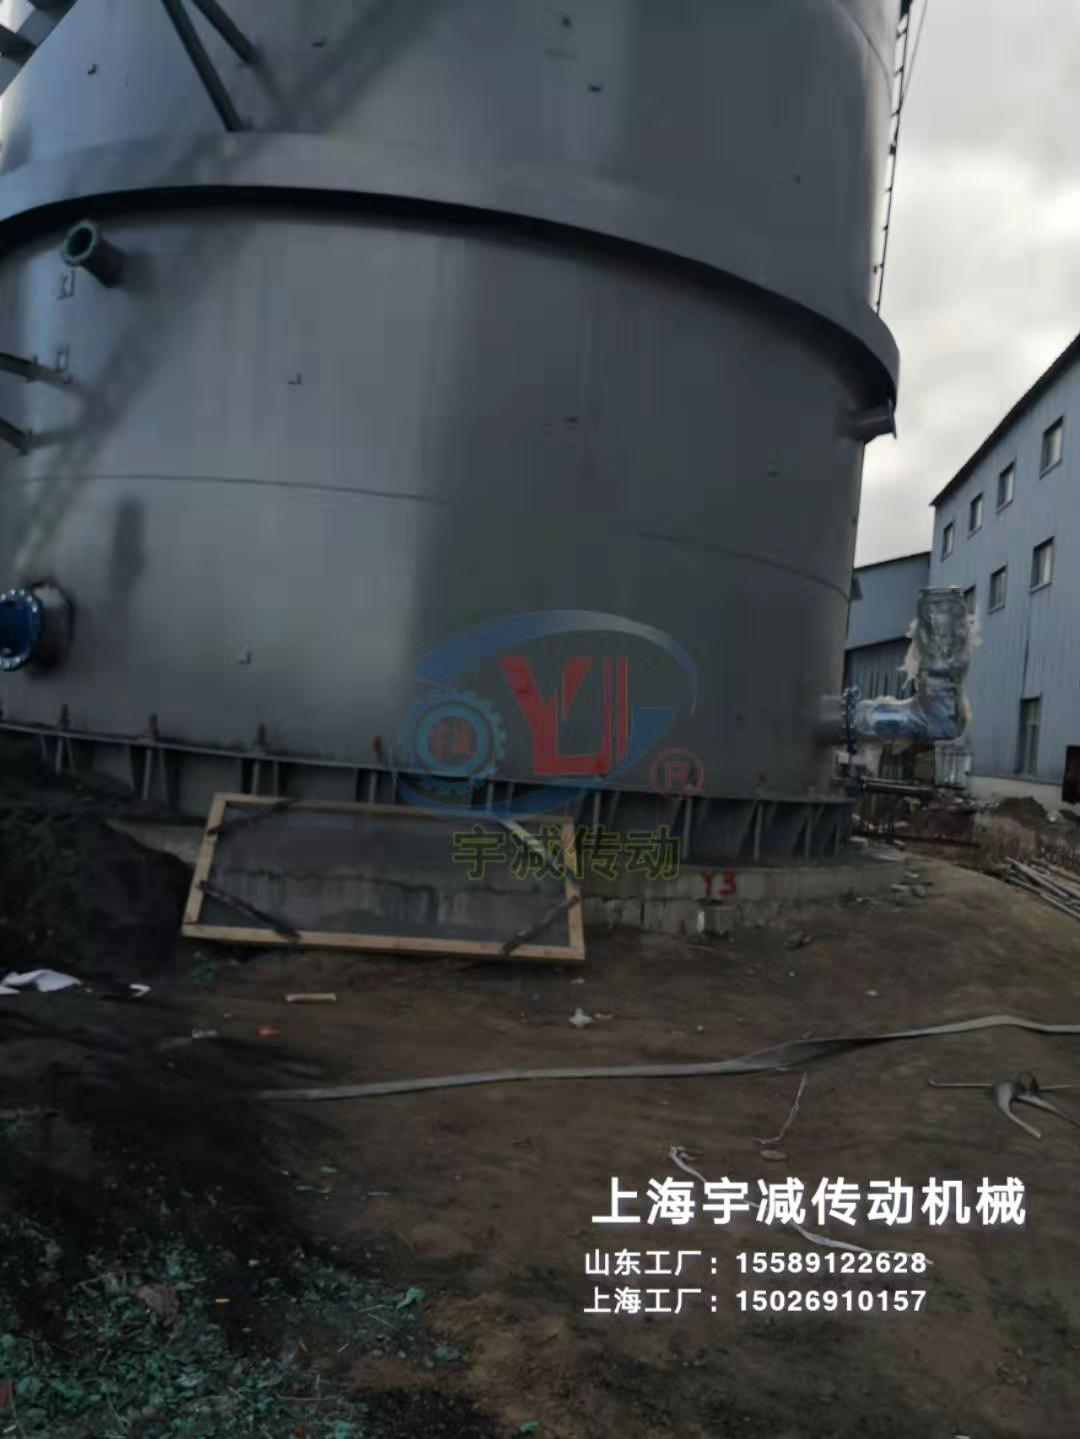 内蒙古热电项目脱硫塔侧入式搅拌器现场指导安装